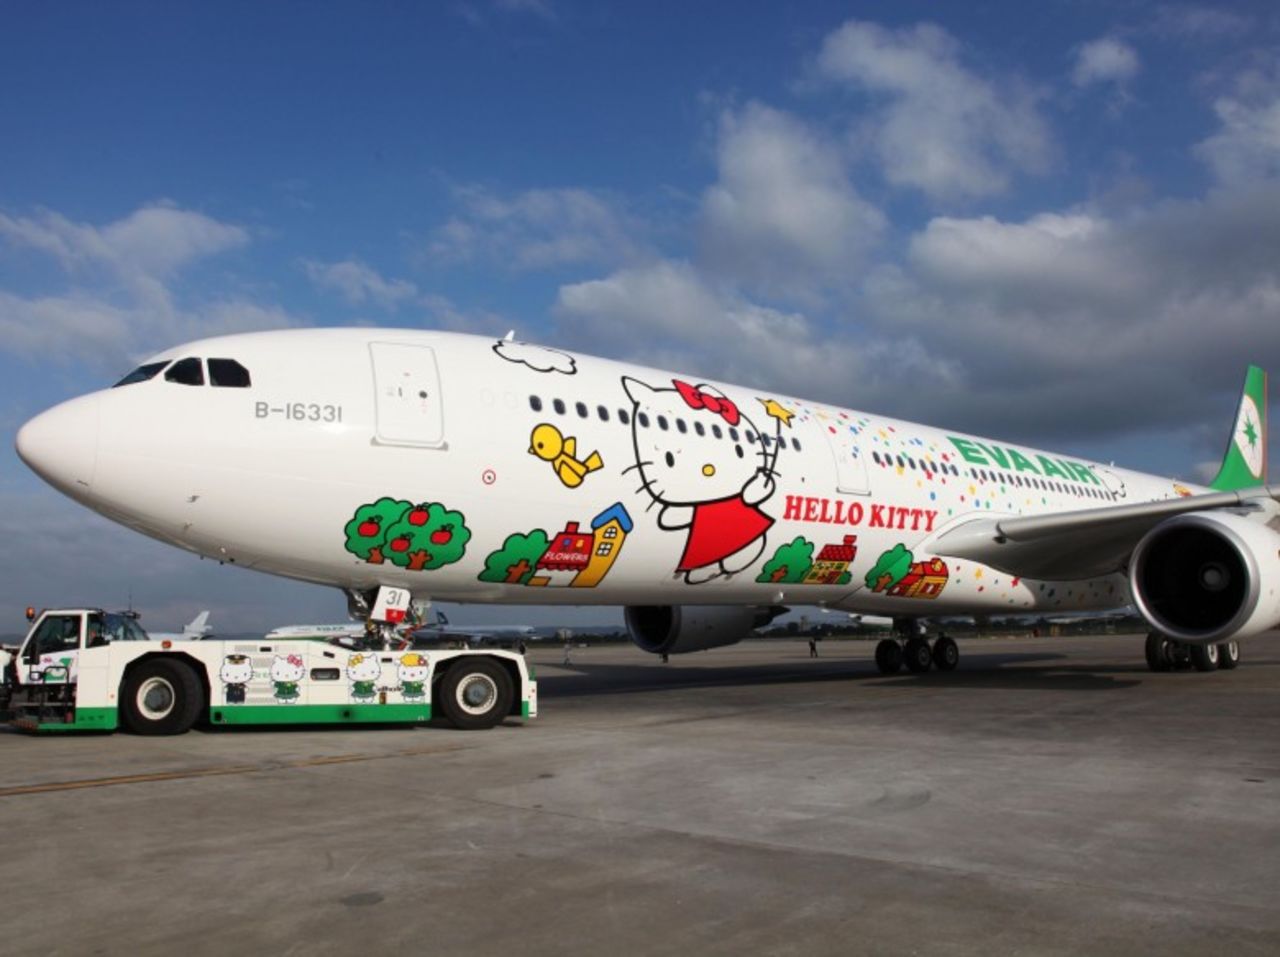 EVA Air lanzó su primer jet de larga distancia para el trayecto Taipei-Los Ángeles adornado con el icónico personaje. El tema de Hello Kitty está presente en los uniformes de la tripulación, los vasos de café, los apoyacabezas, la comida y los rollos de papel.